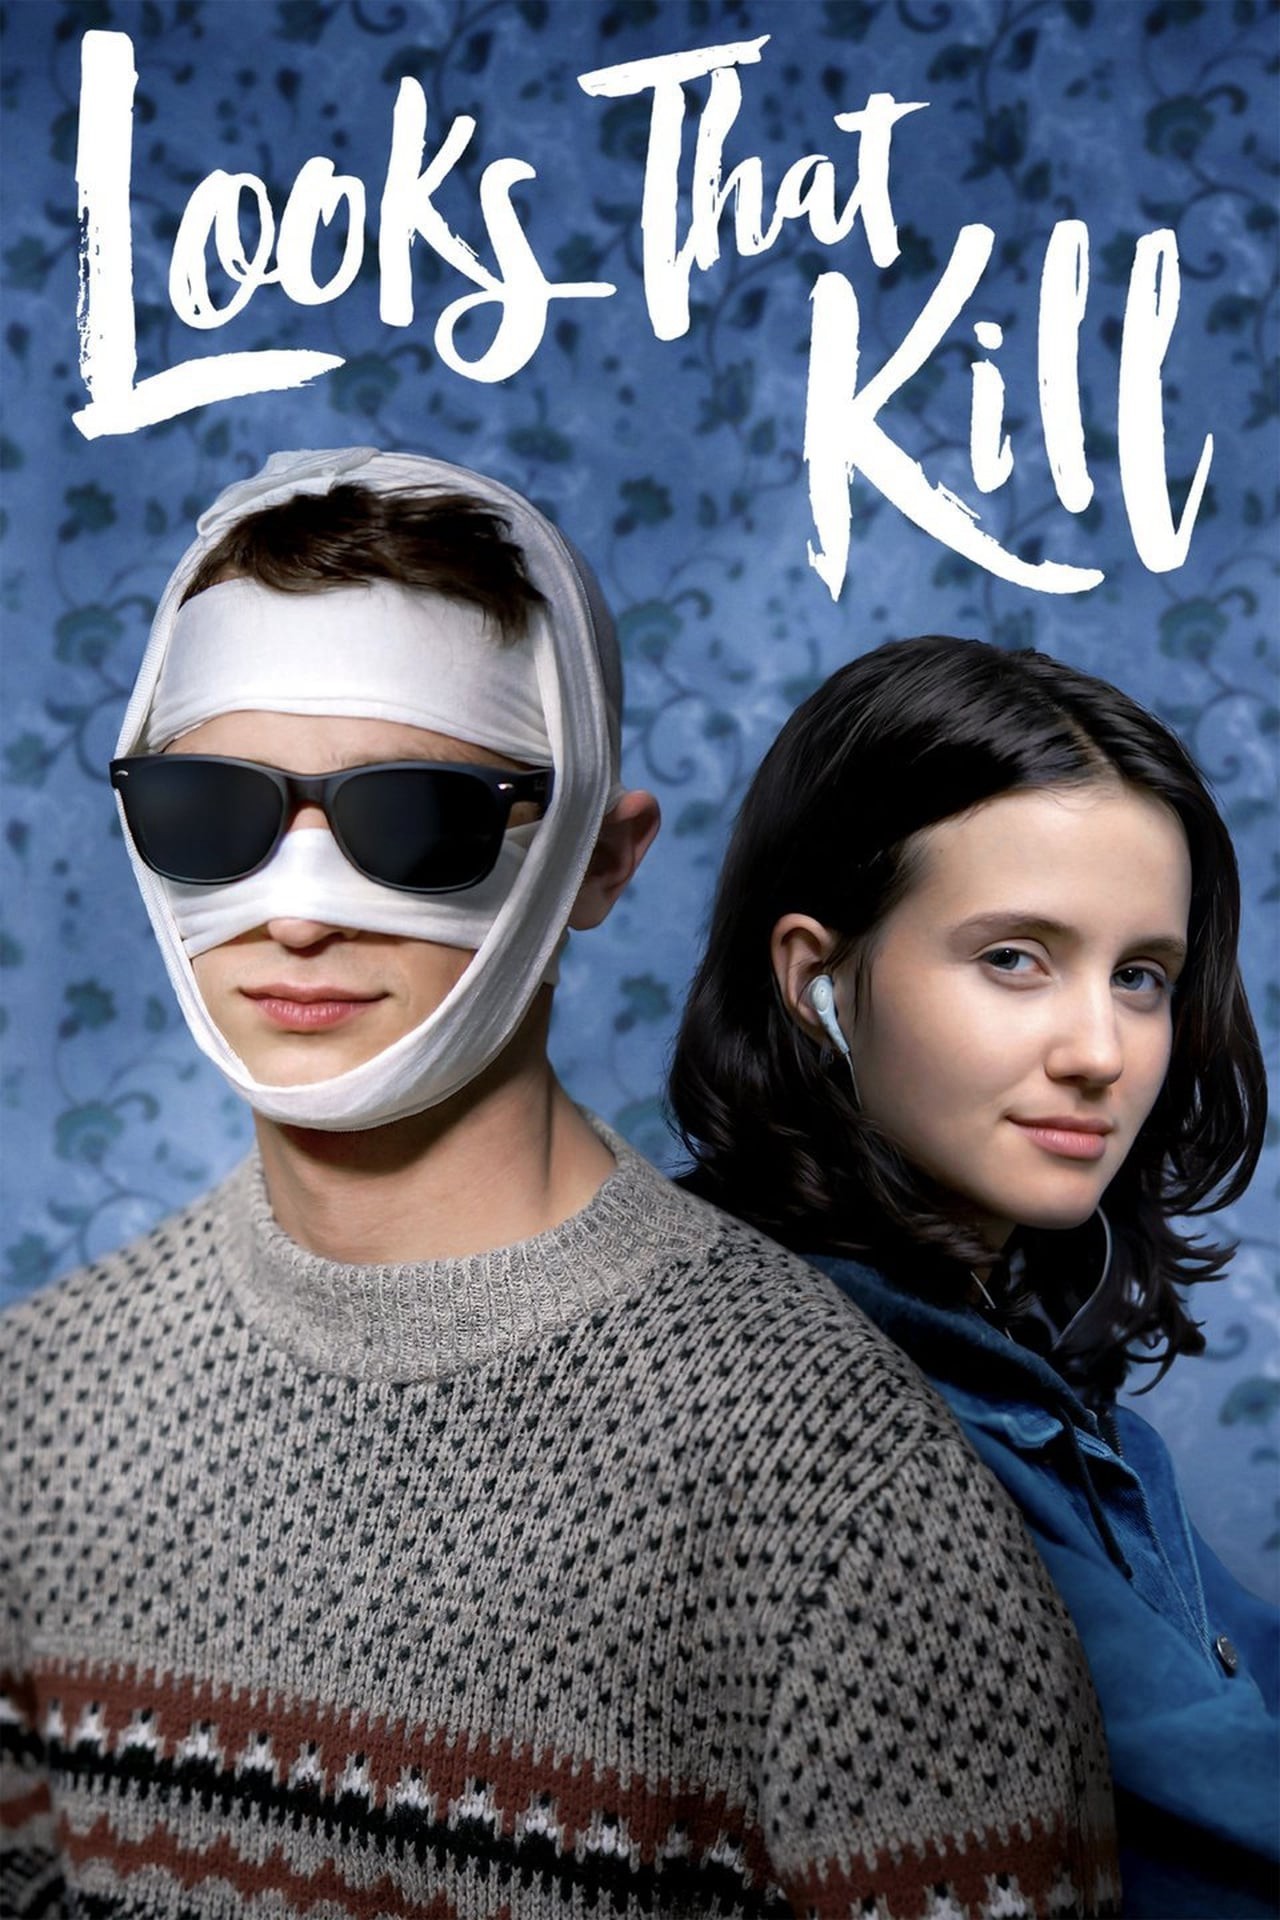 Cái Nhìn Chết Người - Looks That Kill (2020)